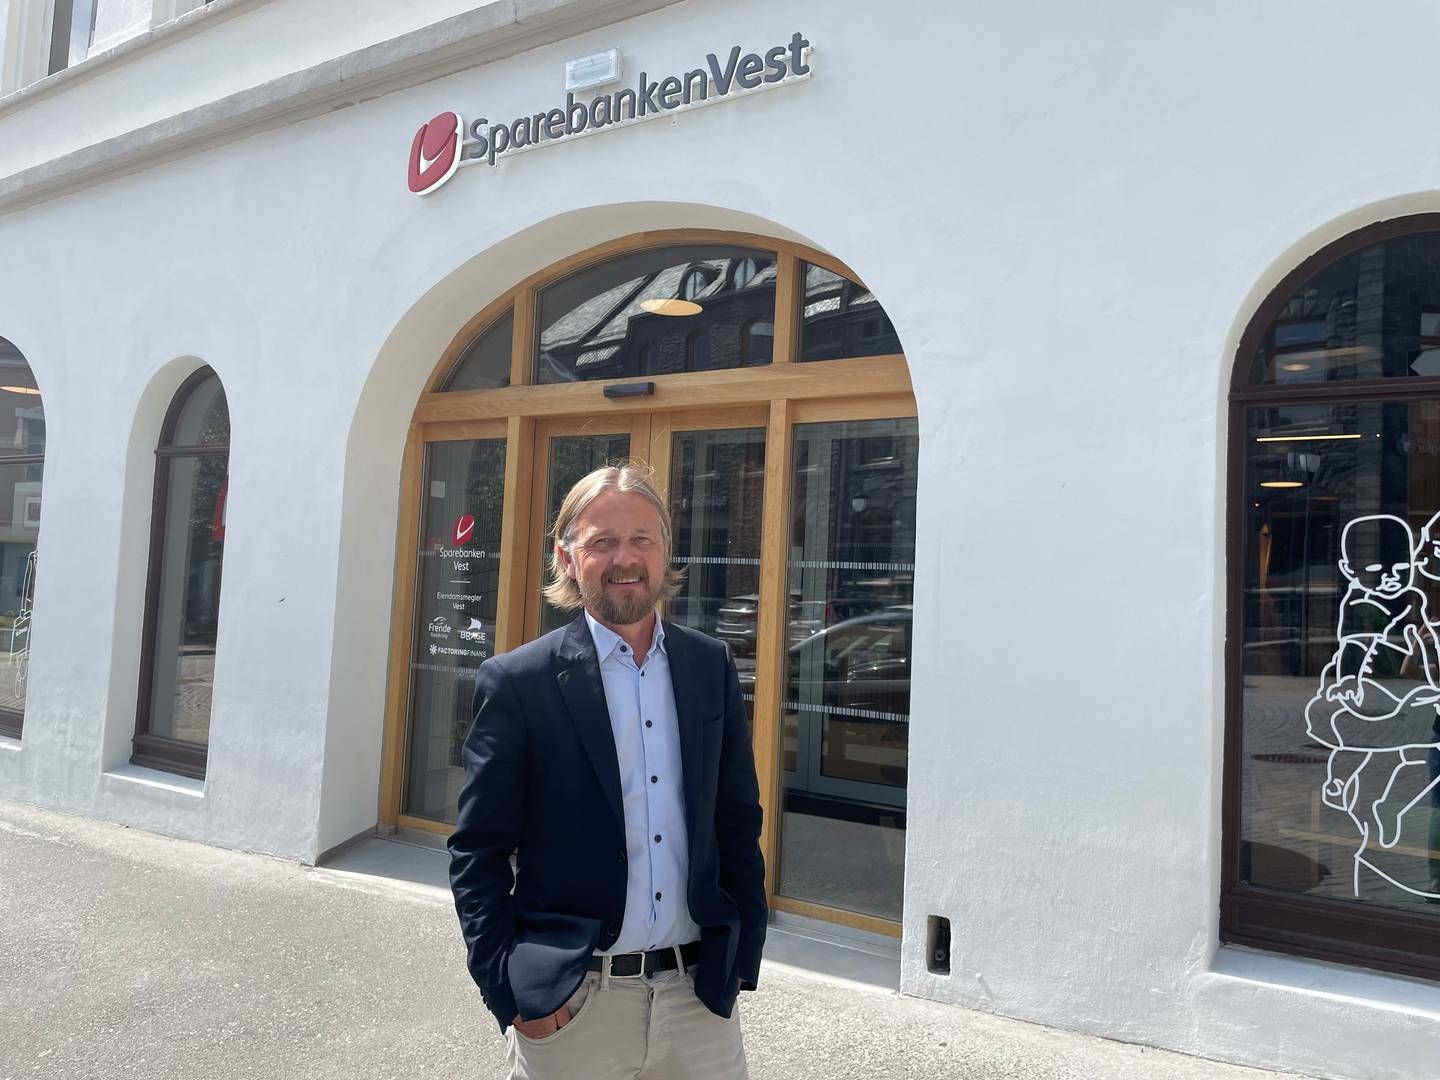 KNUTEPUNKT: – Ålesund er et knutepunkt i regionen og derfor et naturlig sted å starte satsingen, sier leder for bedriftsmarkedet Mathias Frisvold i Sparebanken Vest.